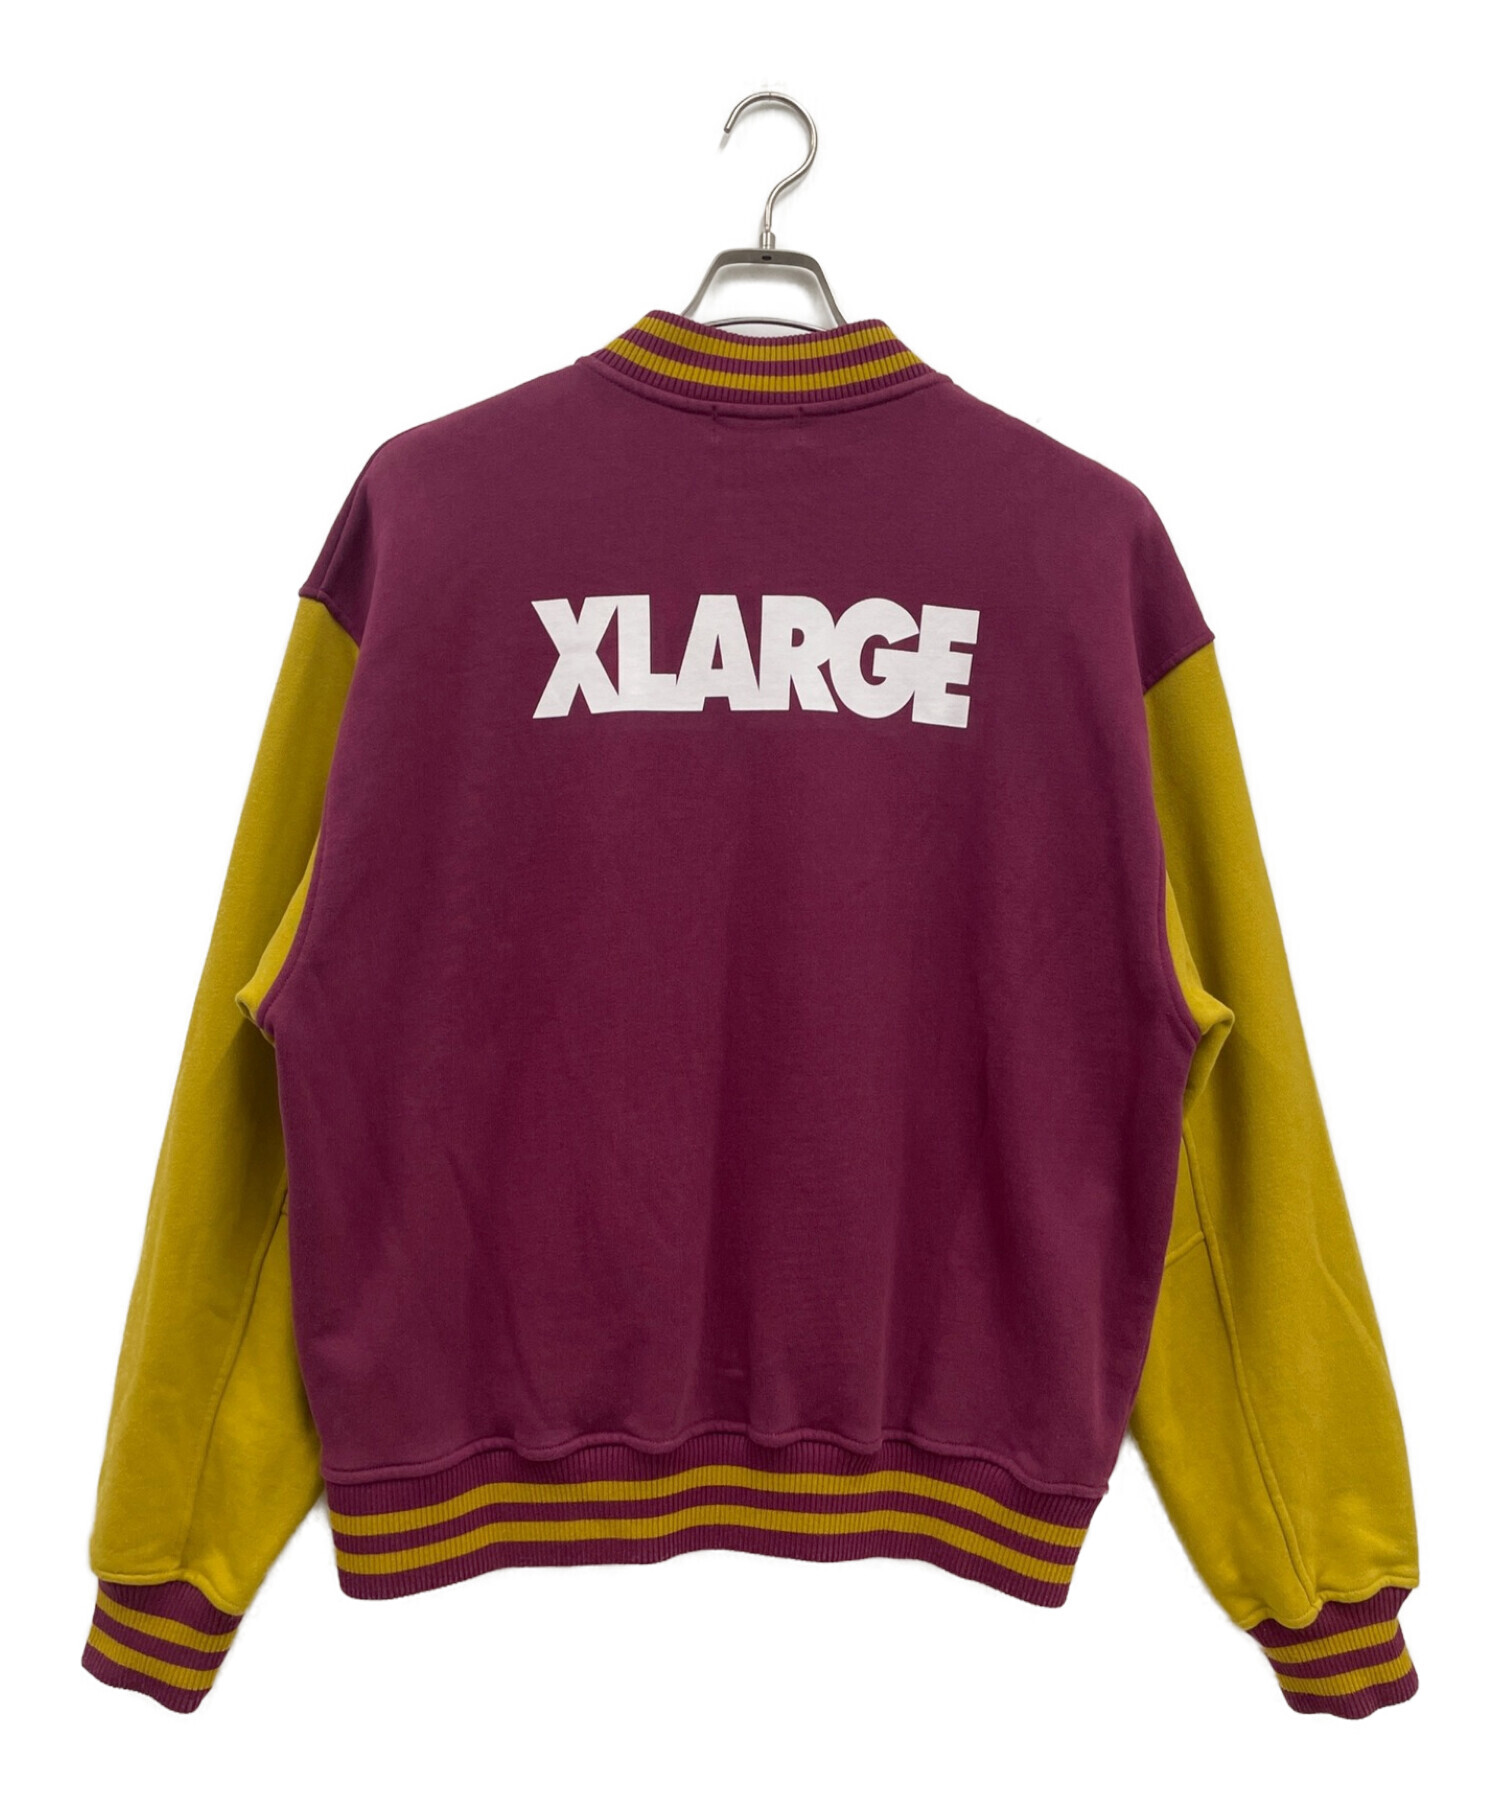 X-LARGE (エクストララージ) スウェット ヴァーシティー ジャケット イエロー×パープル サイズ:M